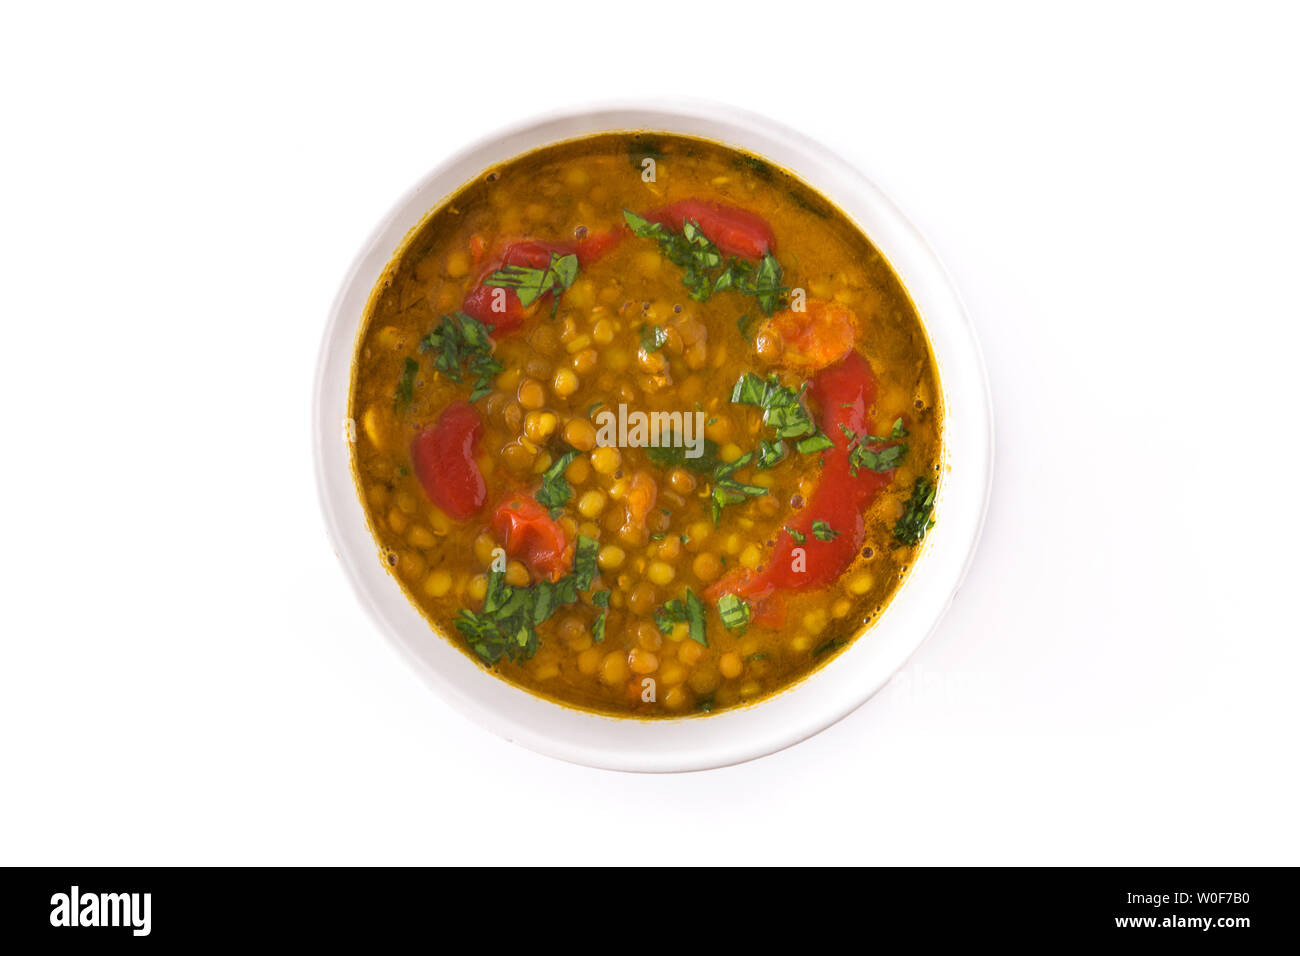 Soupe aux lentilles indiennes dal (dhal) dans un bol isolé sur fond blanc. Vue d'en haut Banque D'Images